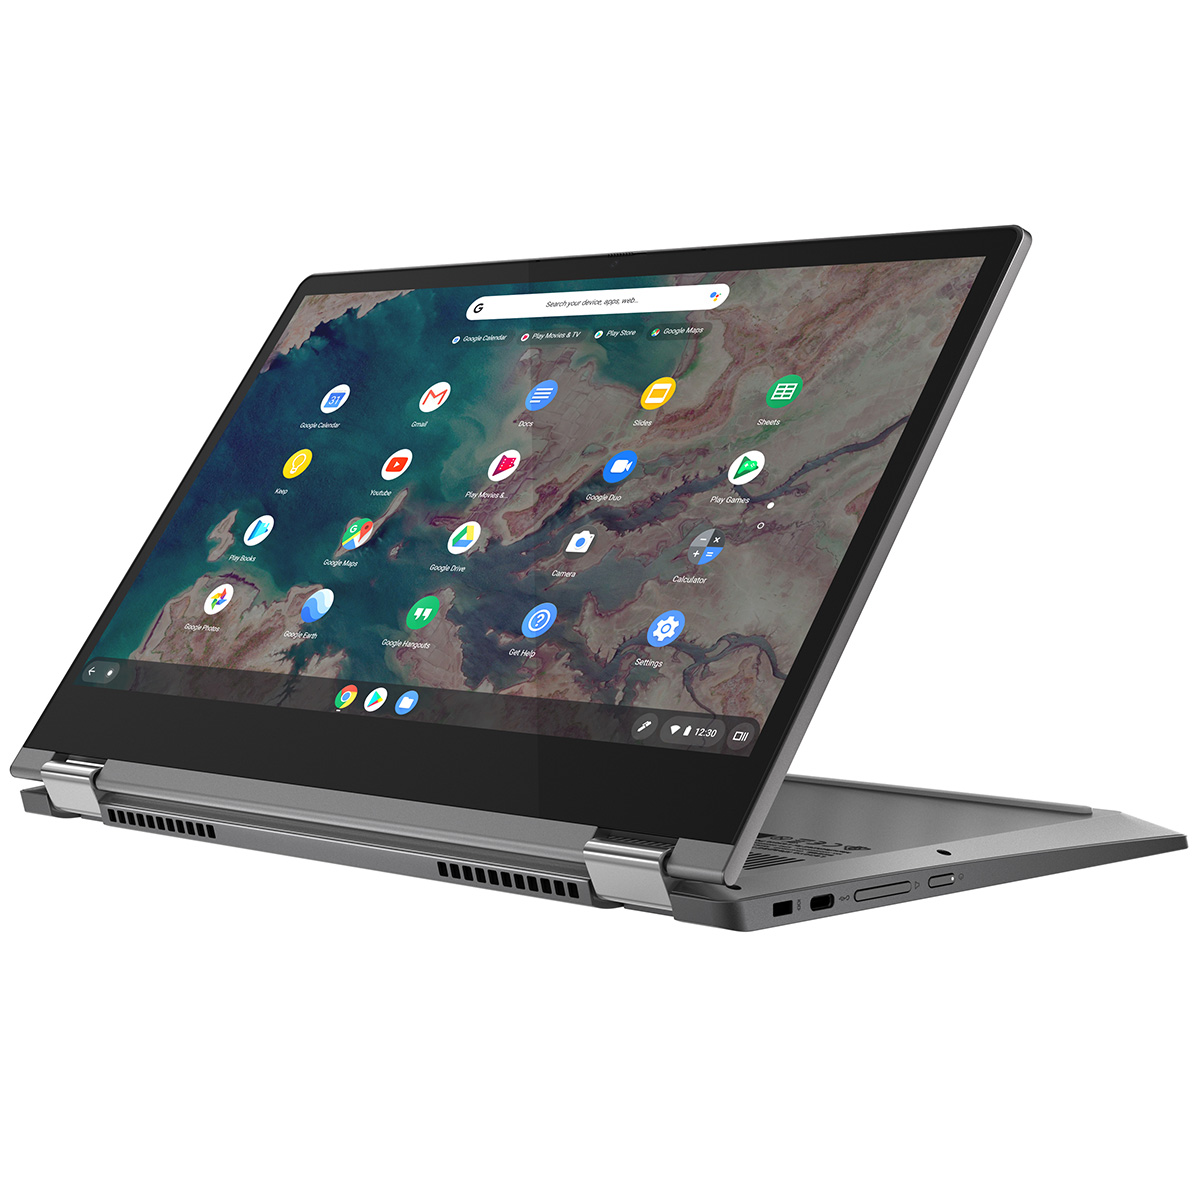 限定特典付き Chromebook 新品 ノートパソコン IdeaPad Flex550i 13.3型 メモリ4GB タッチパネル対応